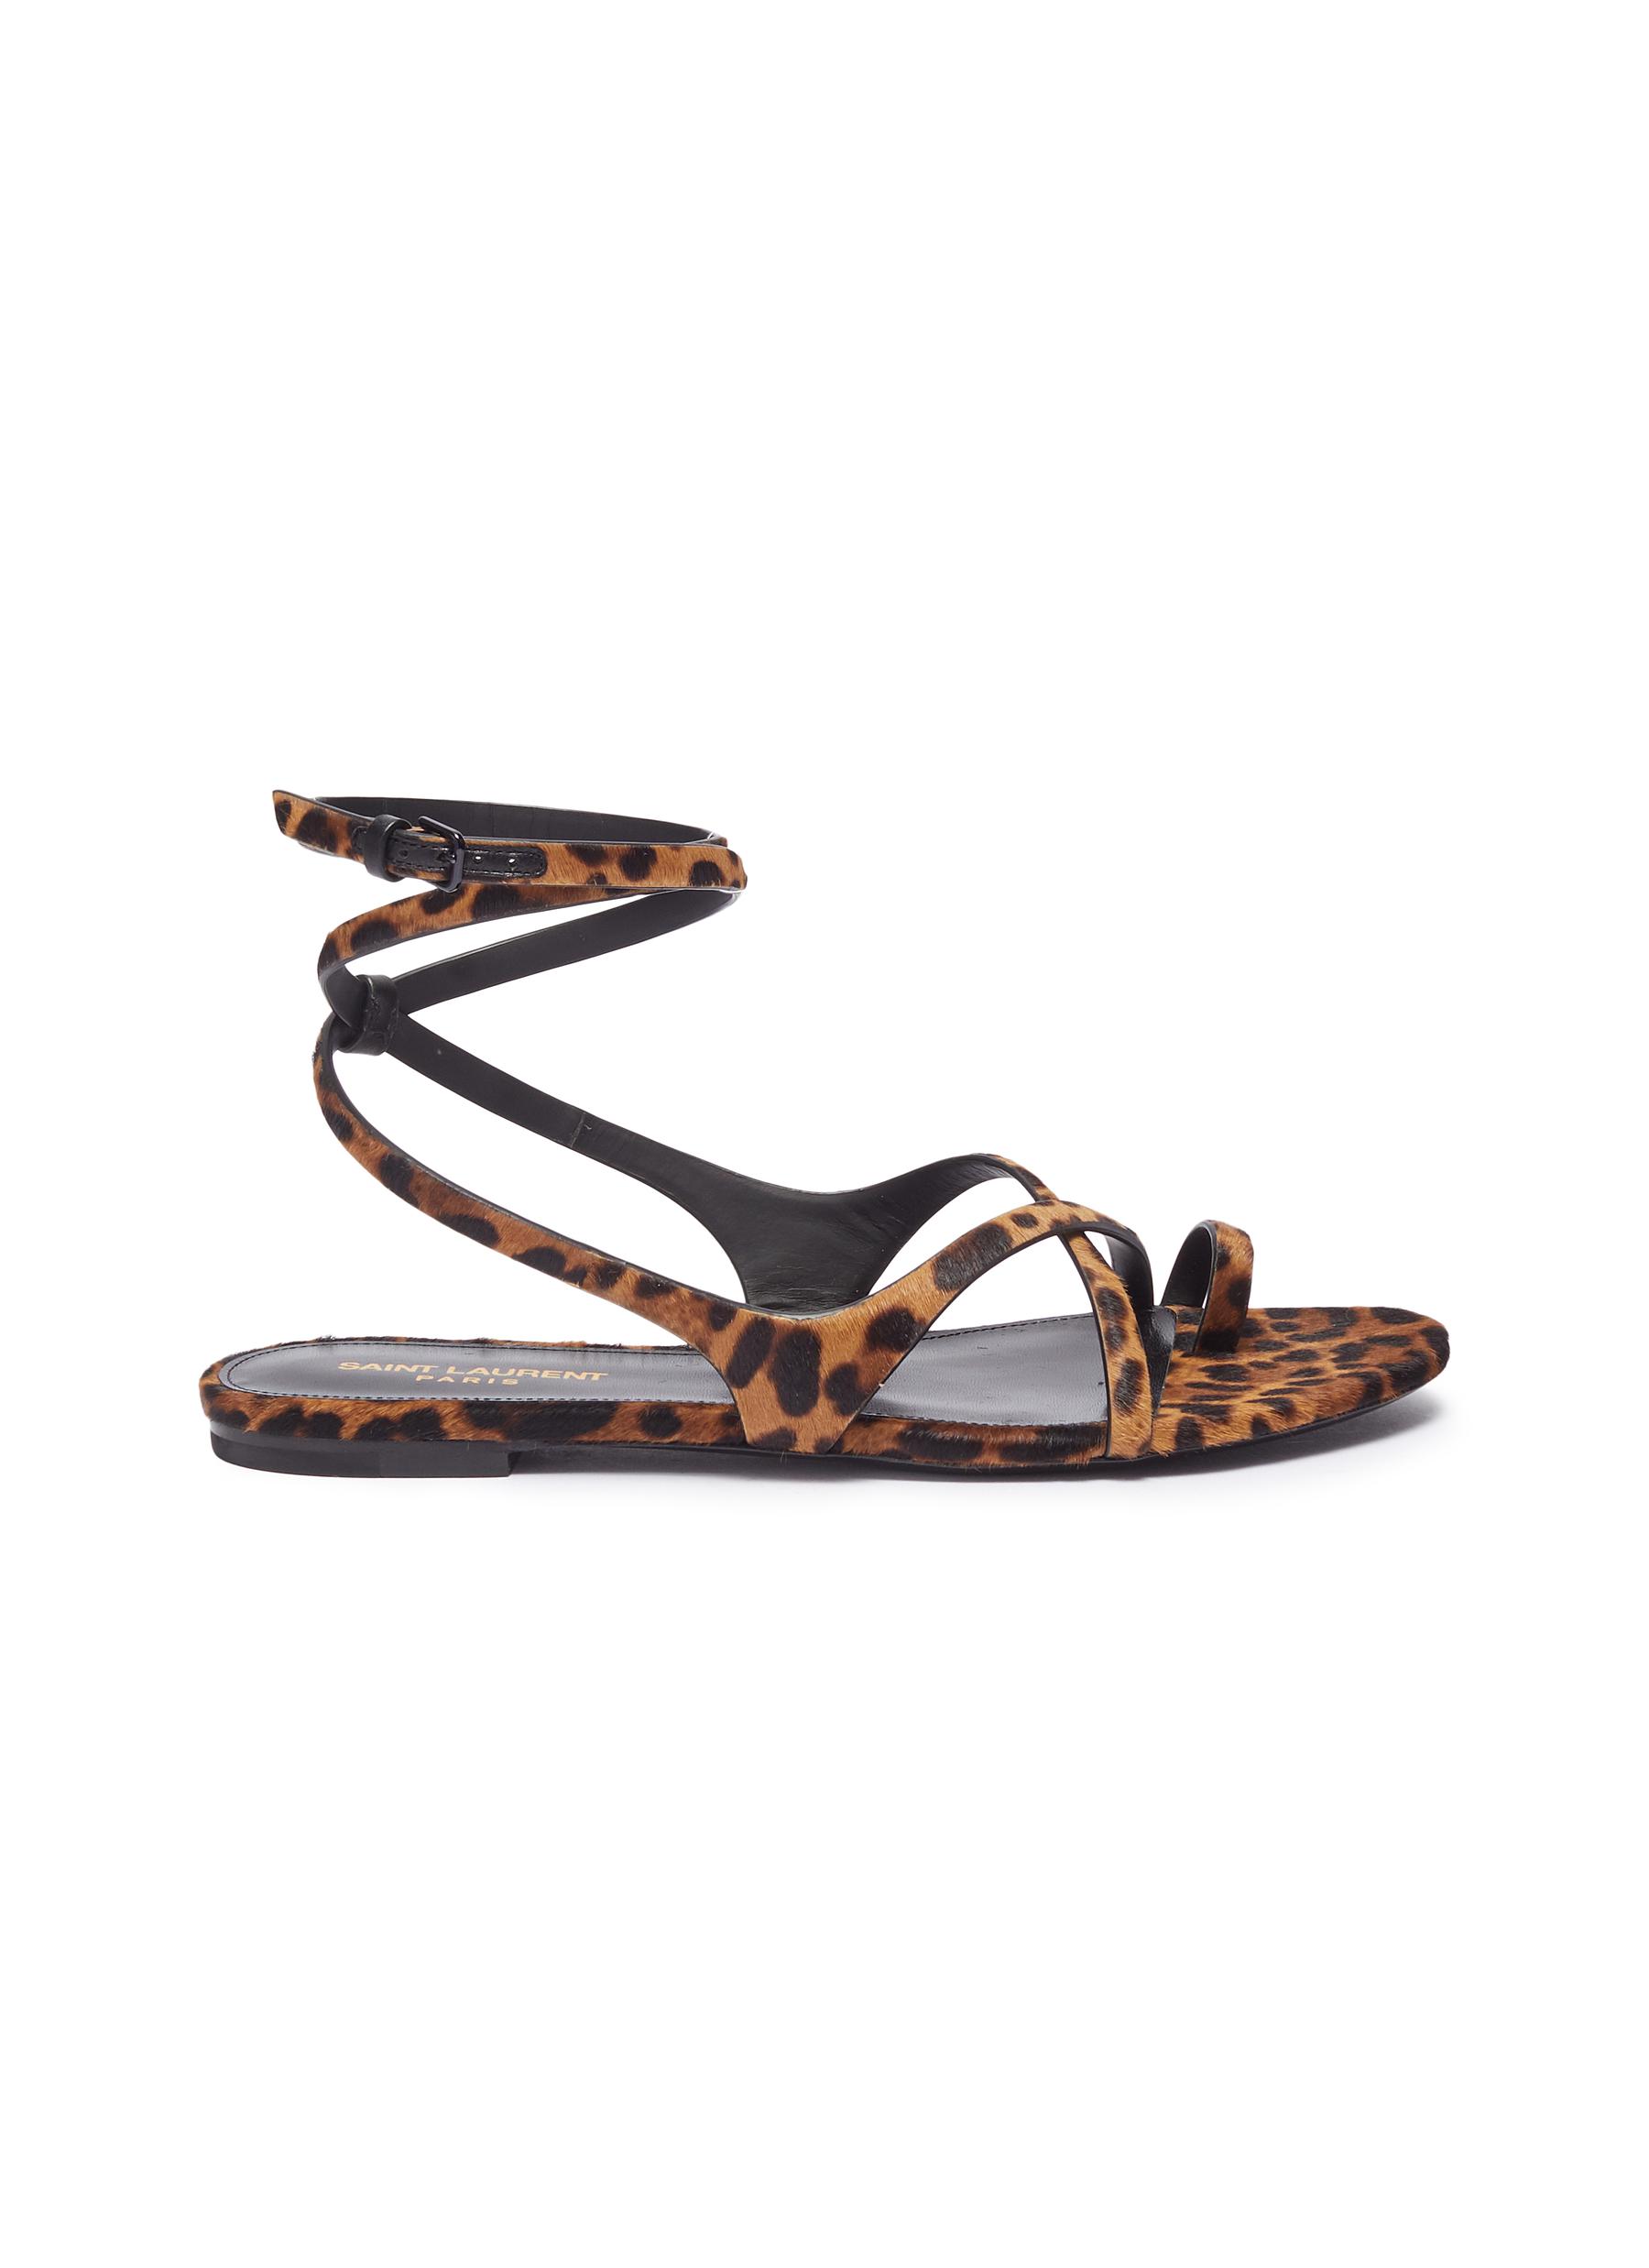 Leopard print ponyhair strappy sandals by Saint Laurent